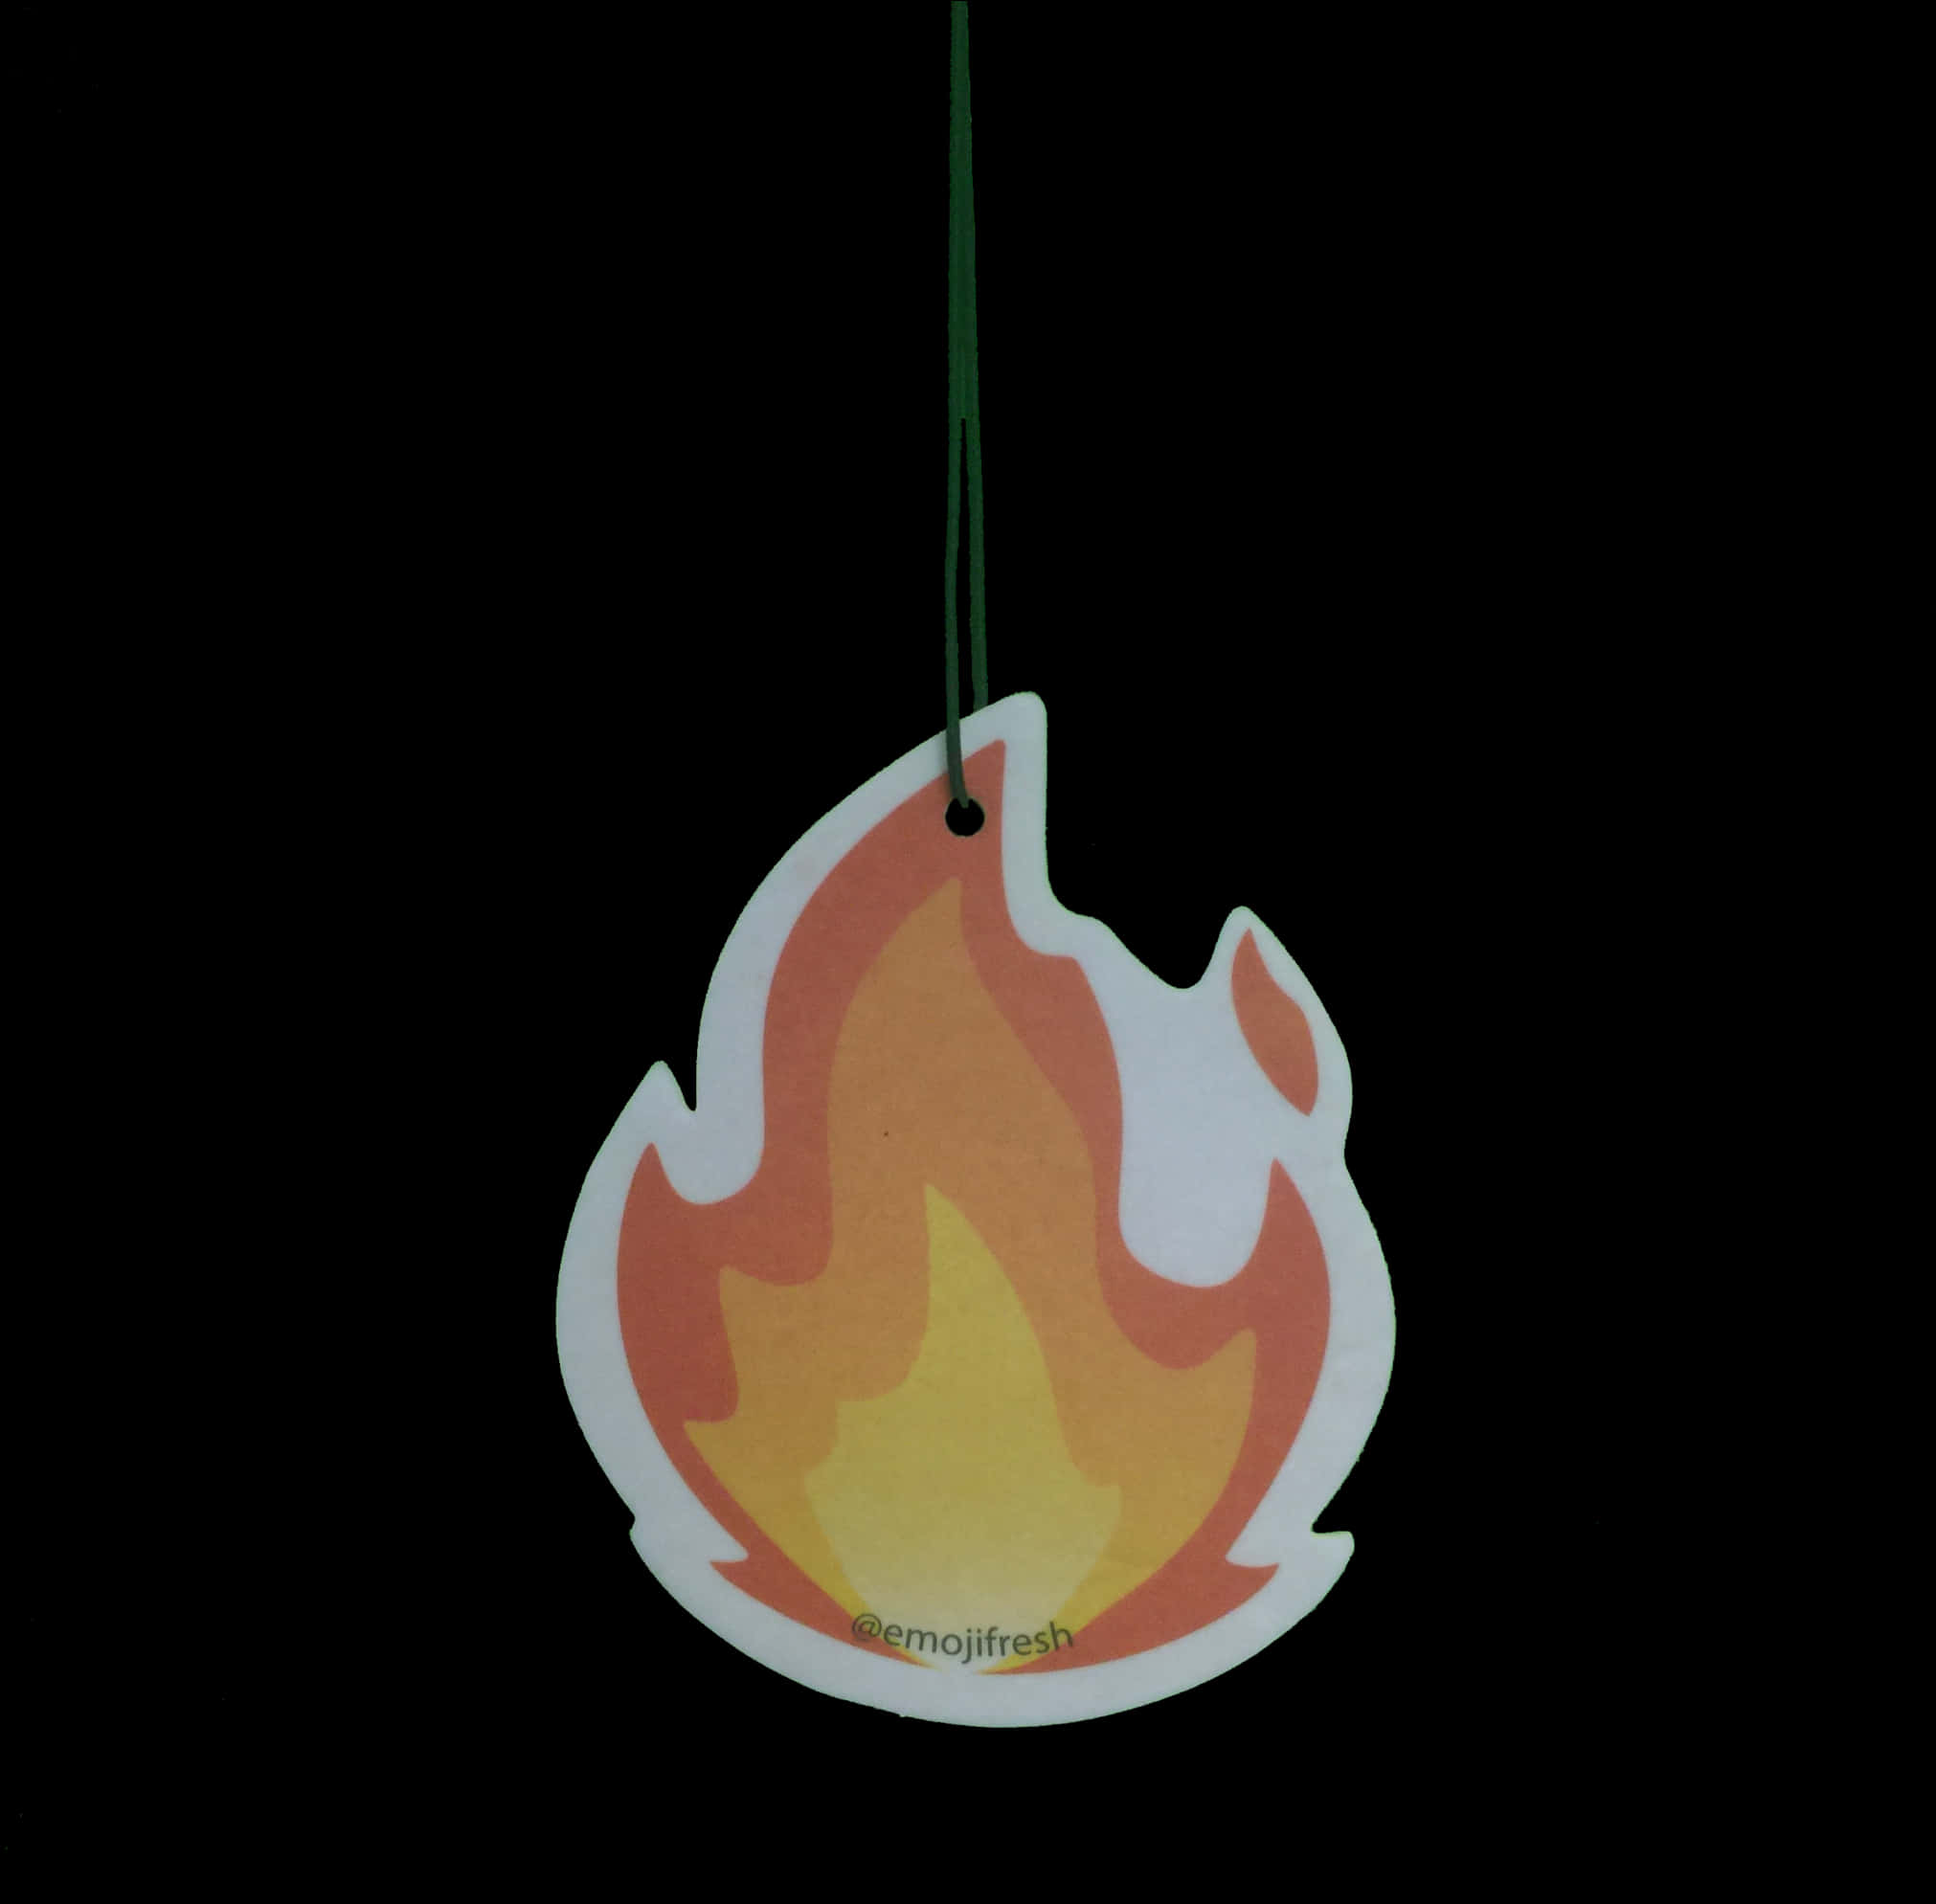 Hanging Fire Emoji Air Freshener PNG image